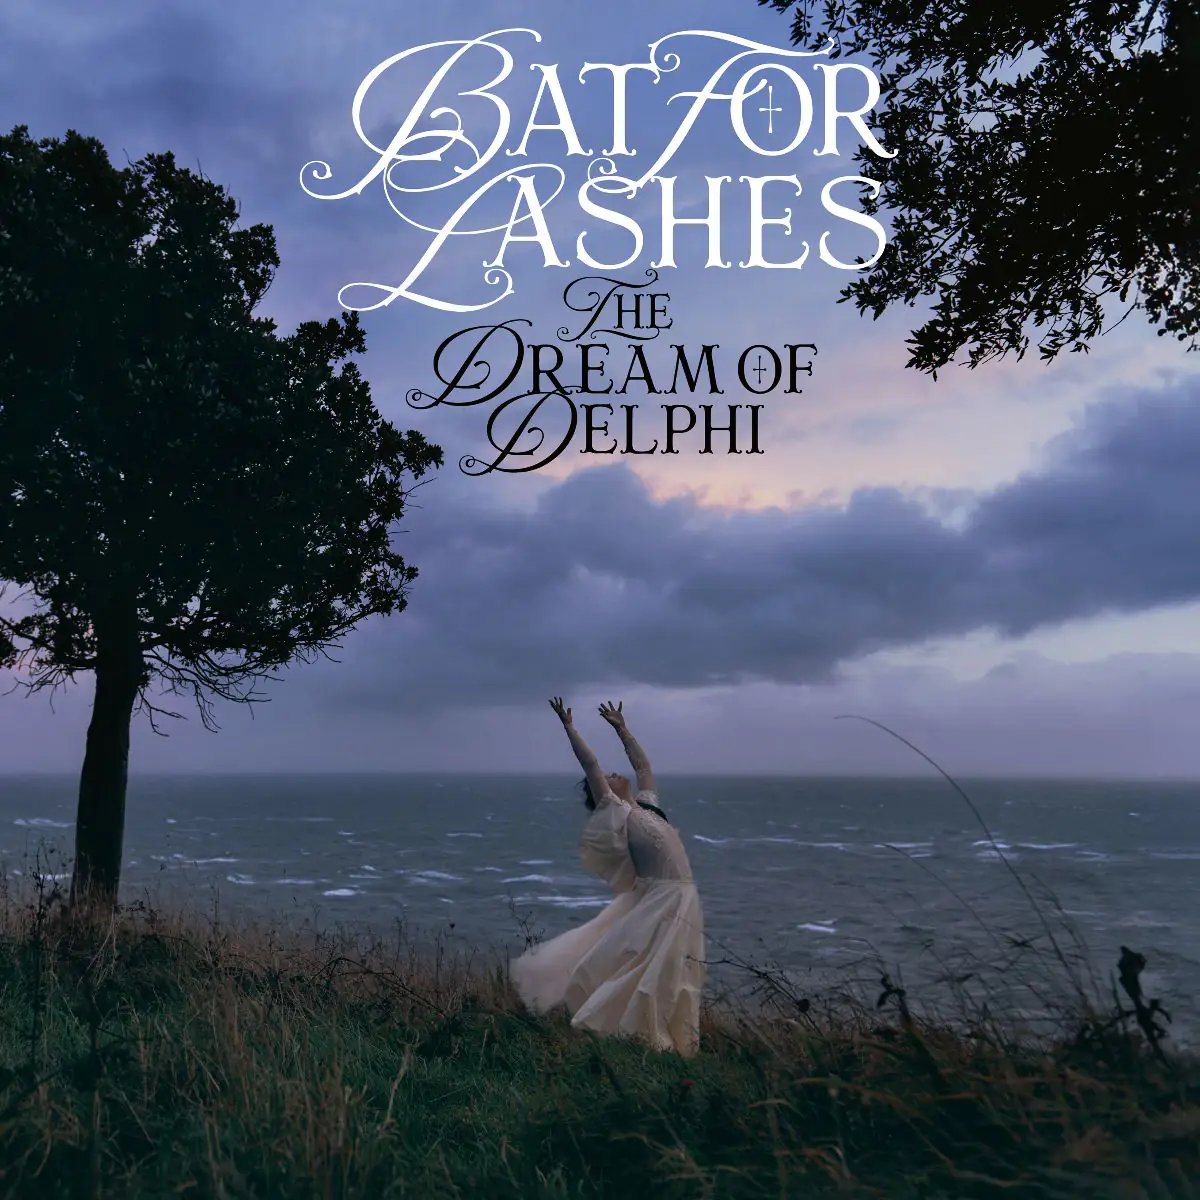 ALBUM REVIEW: Bat for Lashes - Delphi's Dream